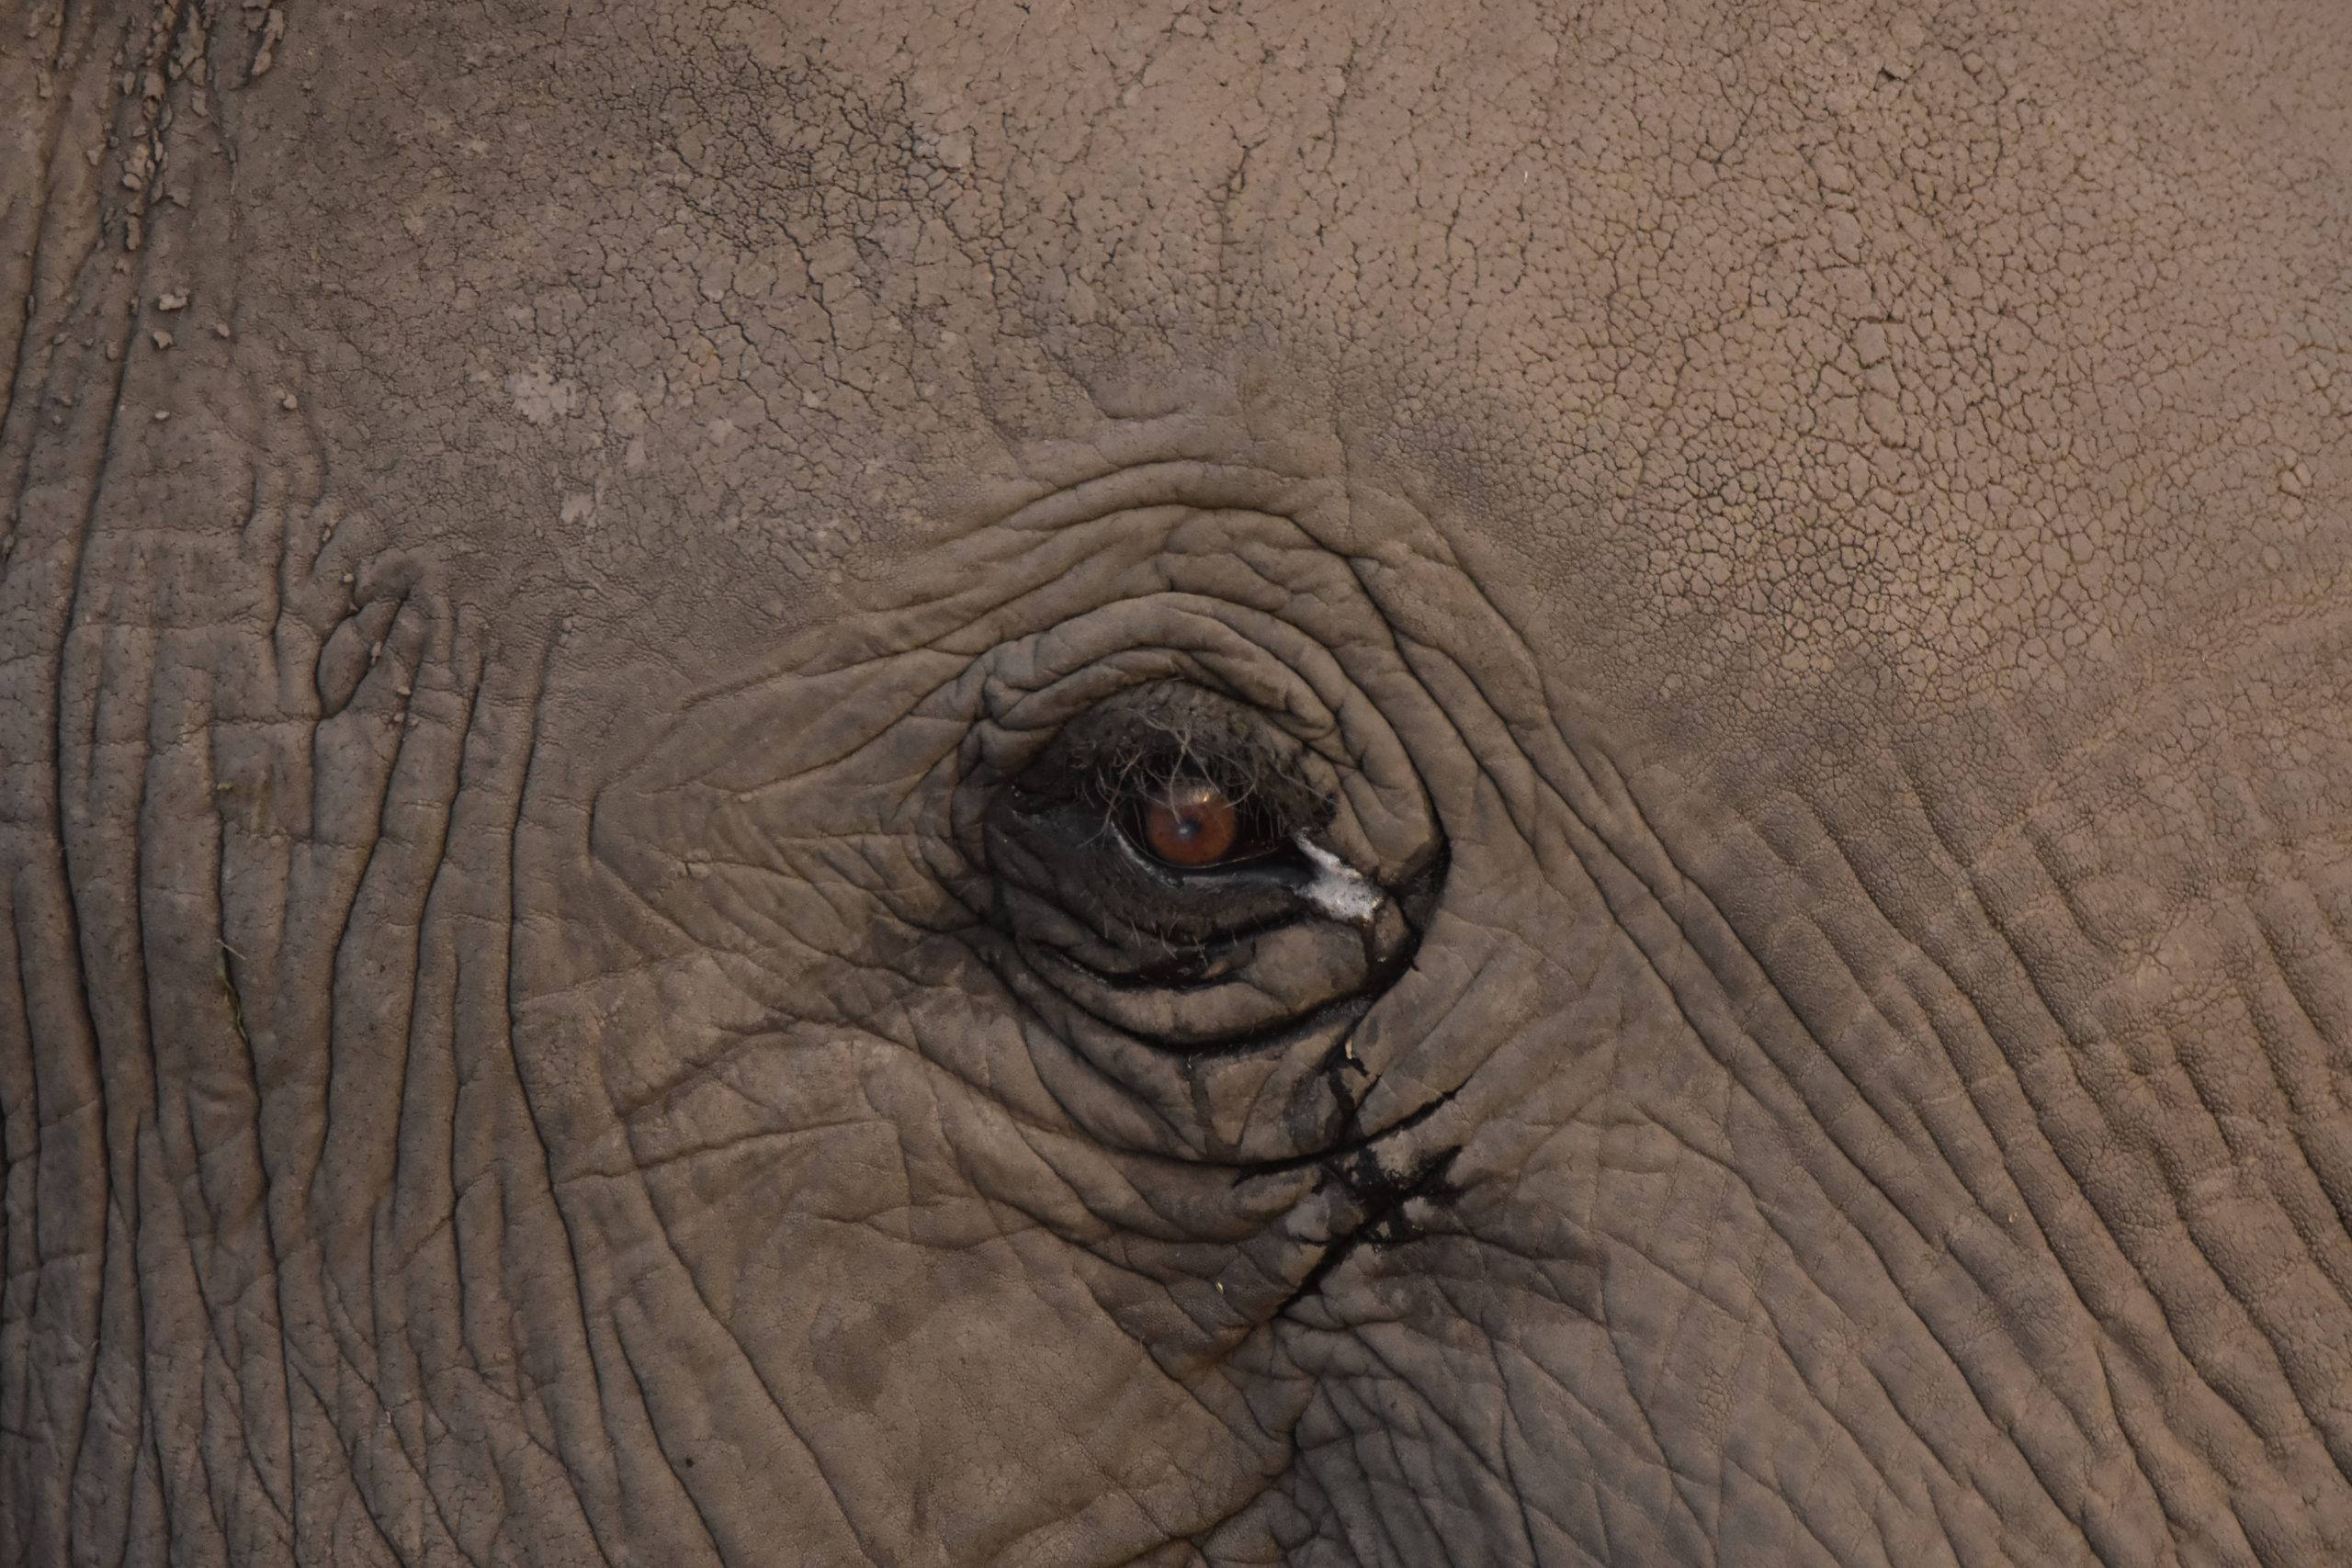 Elephant's eye